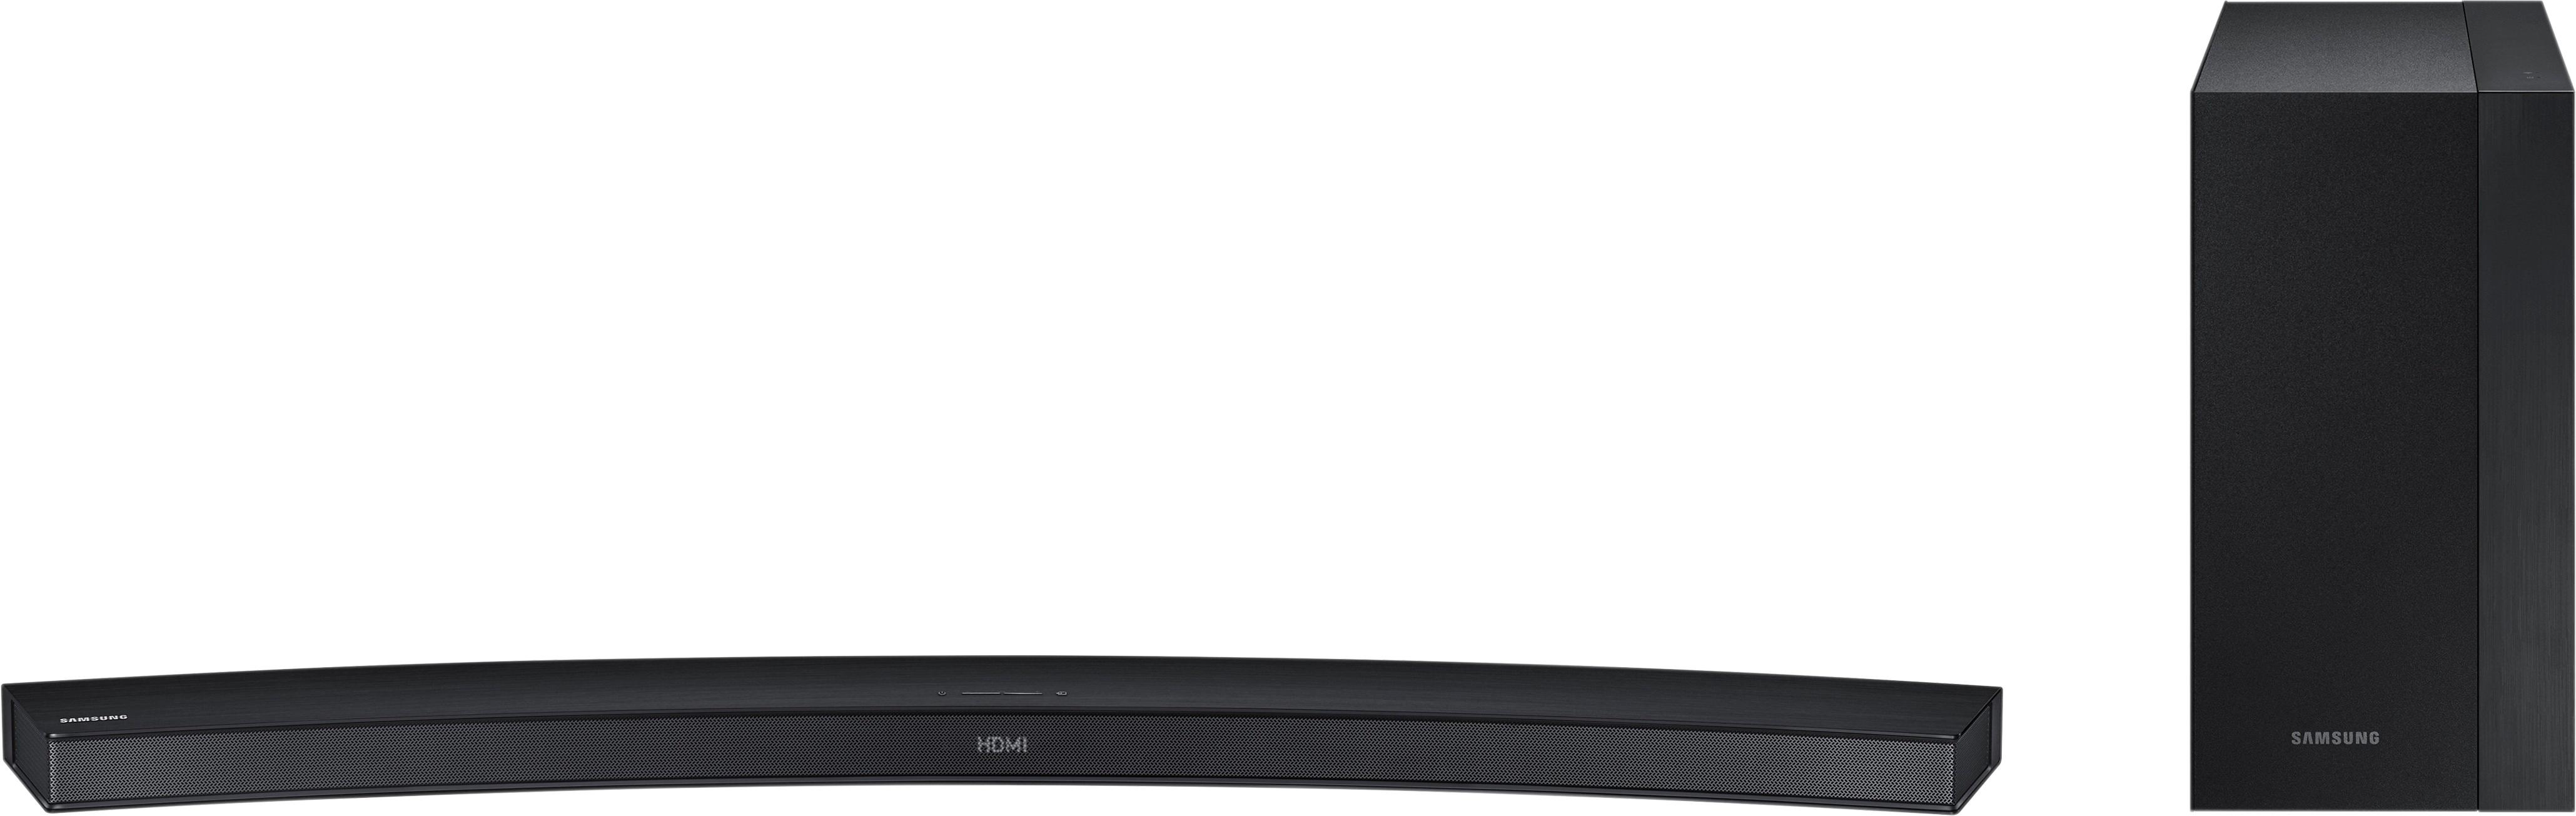 elefant halskæde Torden Best Buy: Samsung 2.1-Channel Curved Soundbar System with Wireless  Subwoofer Black/Silver HW-M4500/ZA